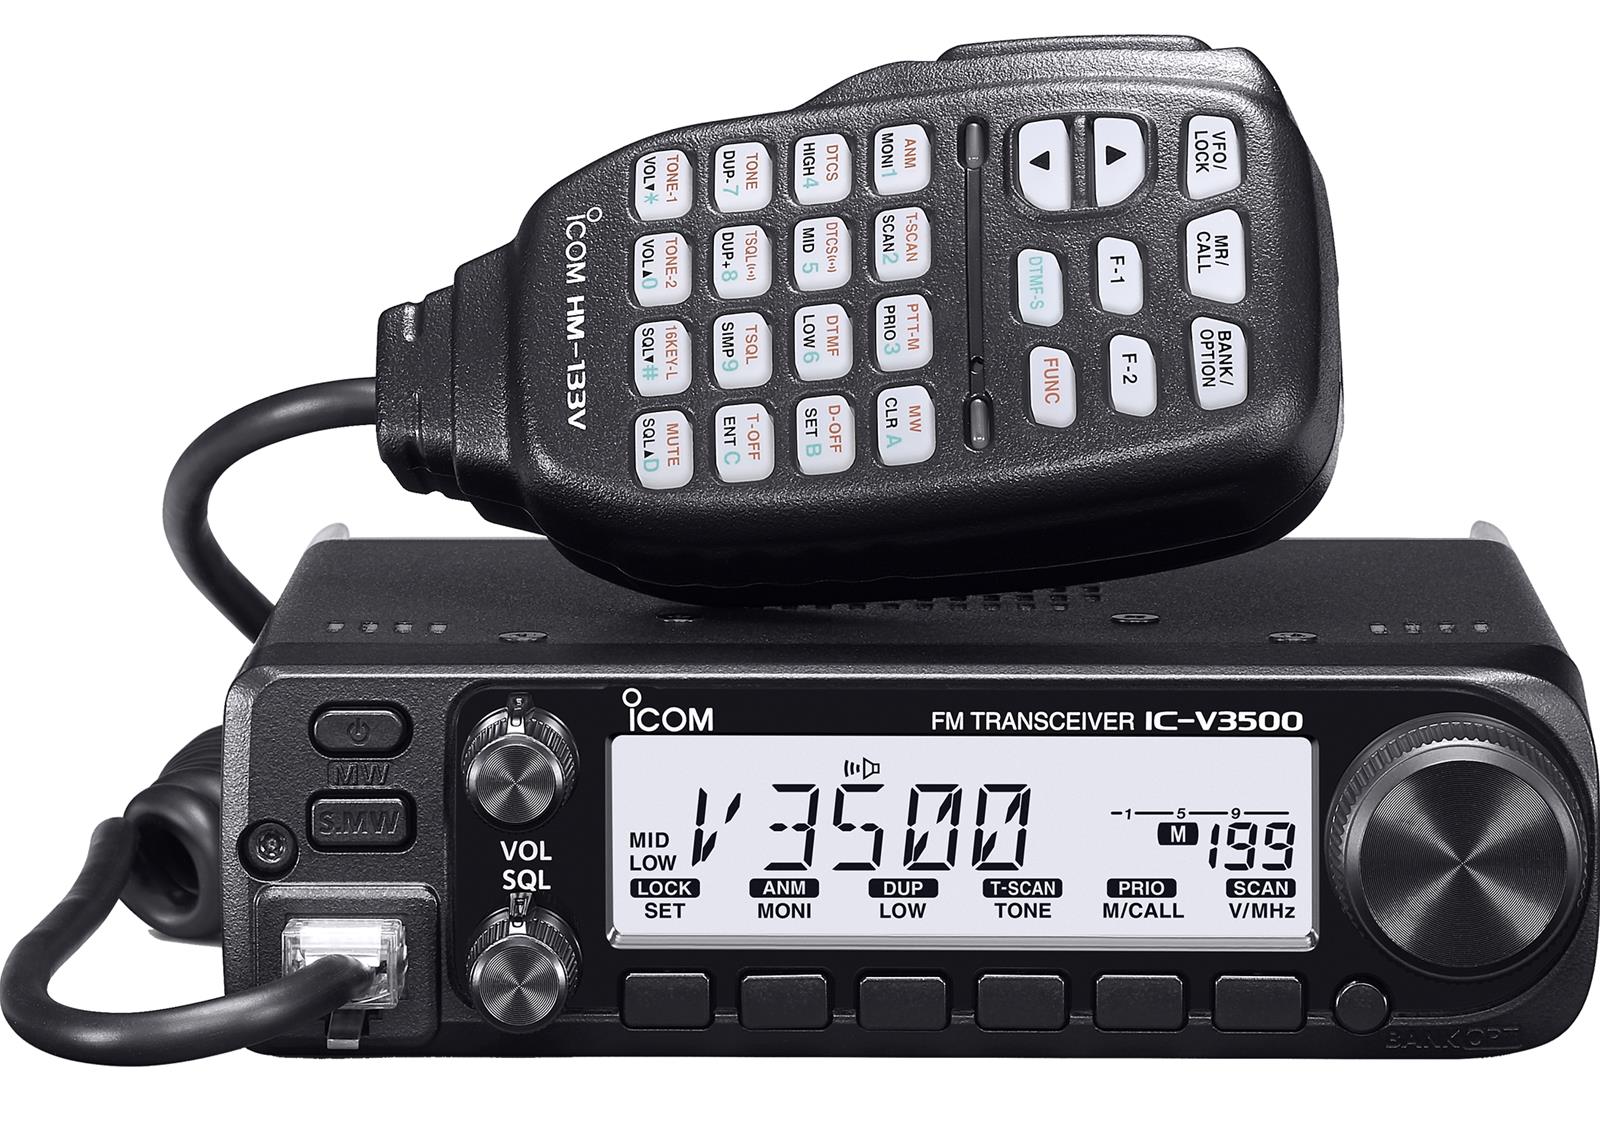 Desgracia grado Tomar medicina ICOM IC-V3500 ICOM IC-V3500 2M VHF FM Mobile Transceivers | DX Engineering